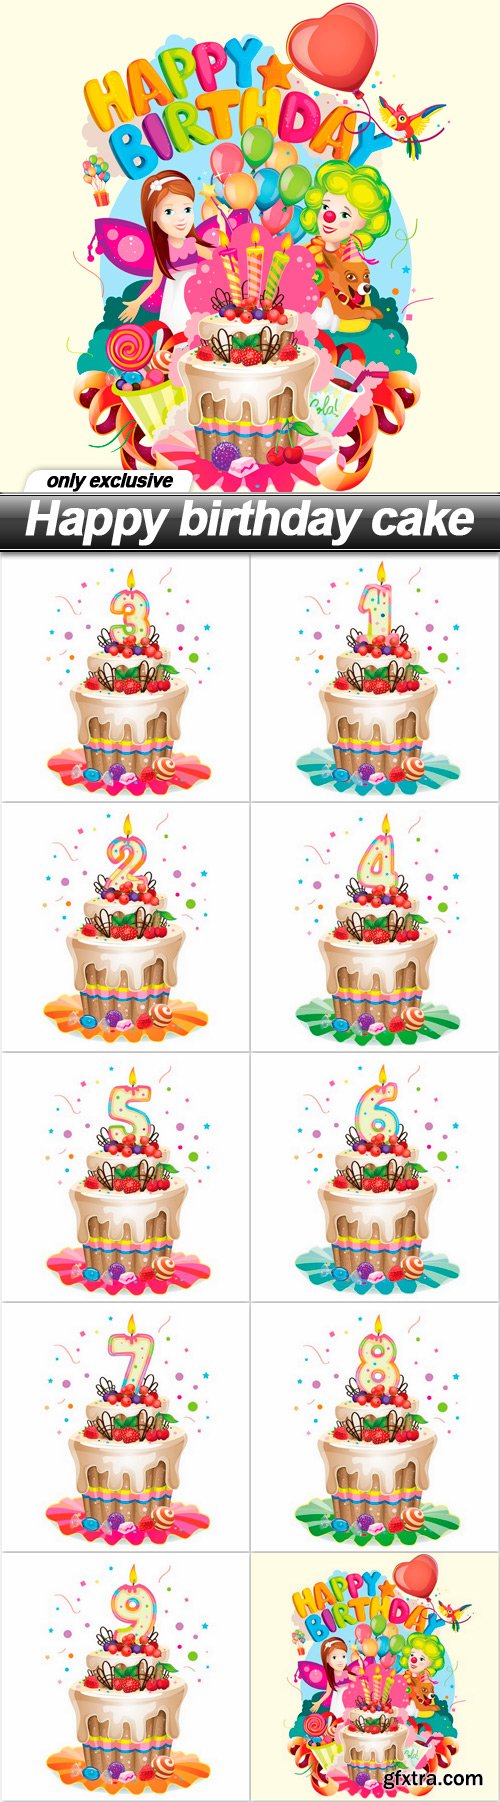 Happy birthday cake - 10 EPS